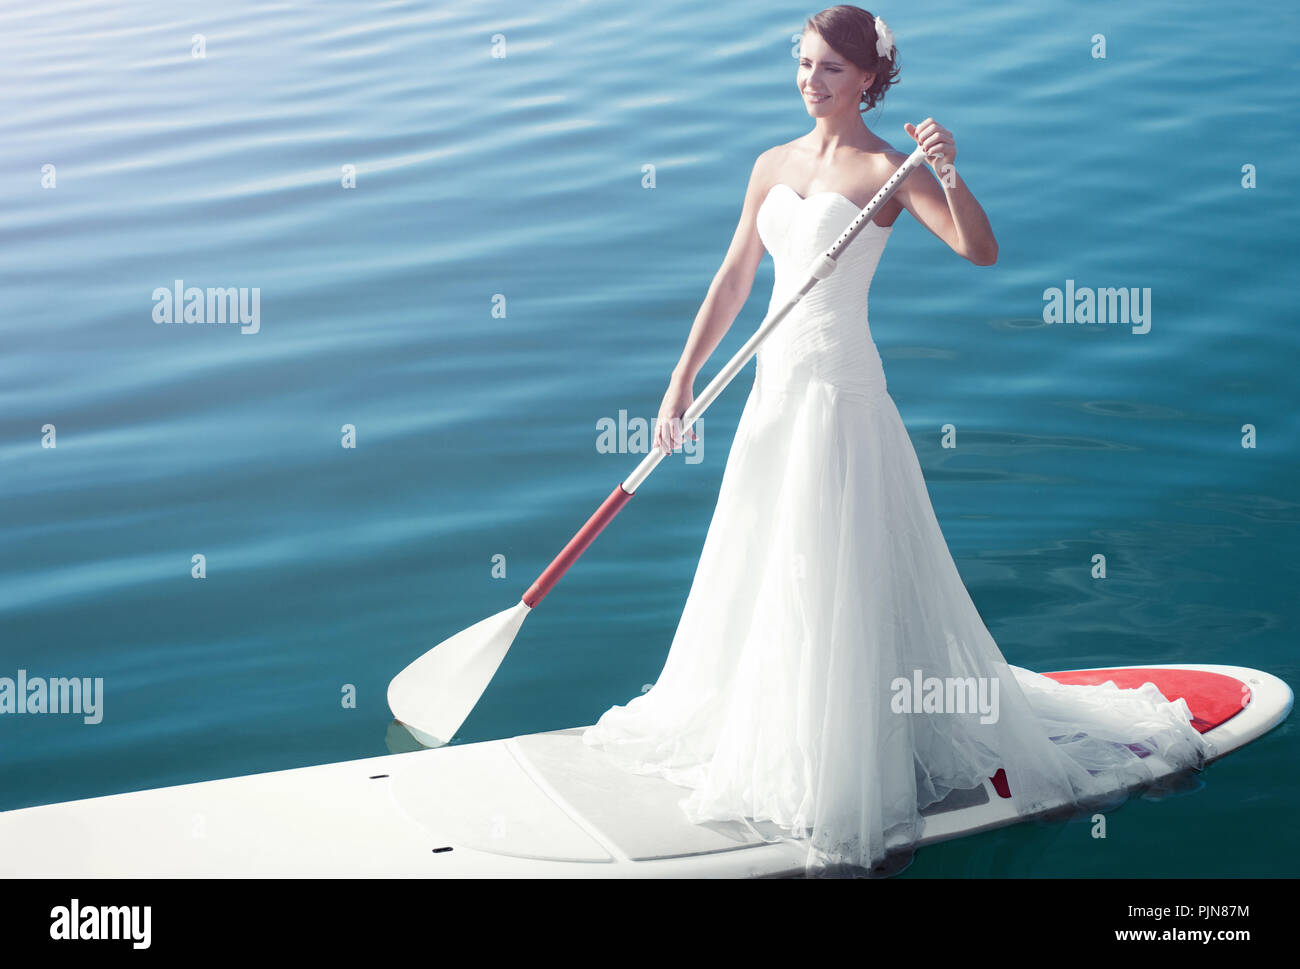 Девушка на лодке в белом платье с веслом